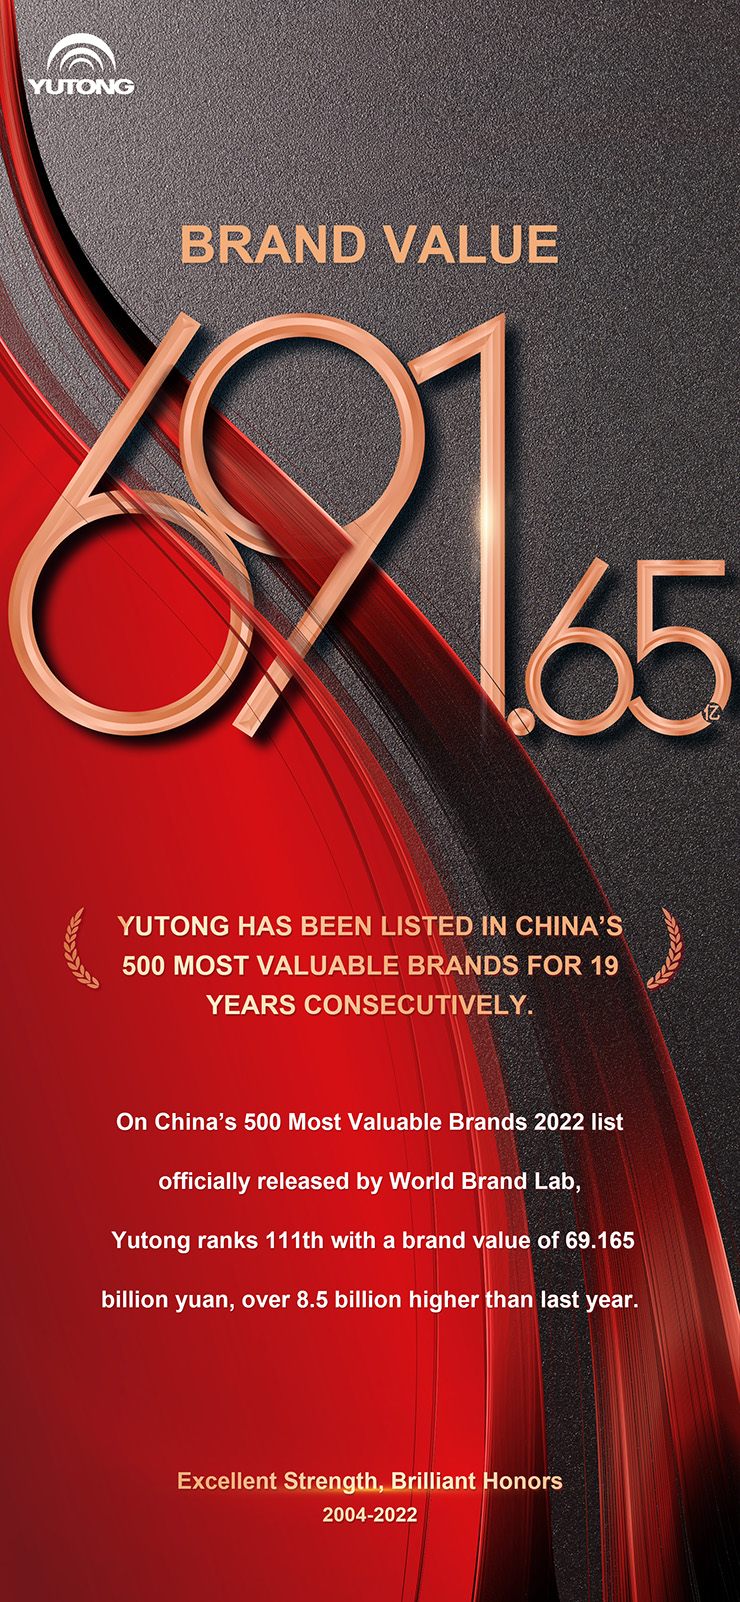 Стоимость бренда Yutong достигнет 69,165 млрд юаней в 2022 году